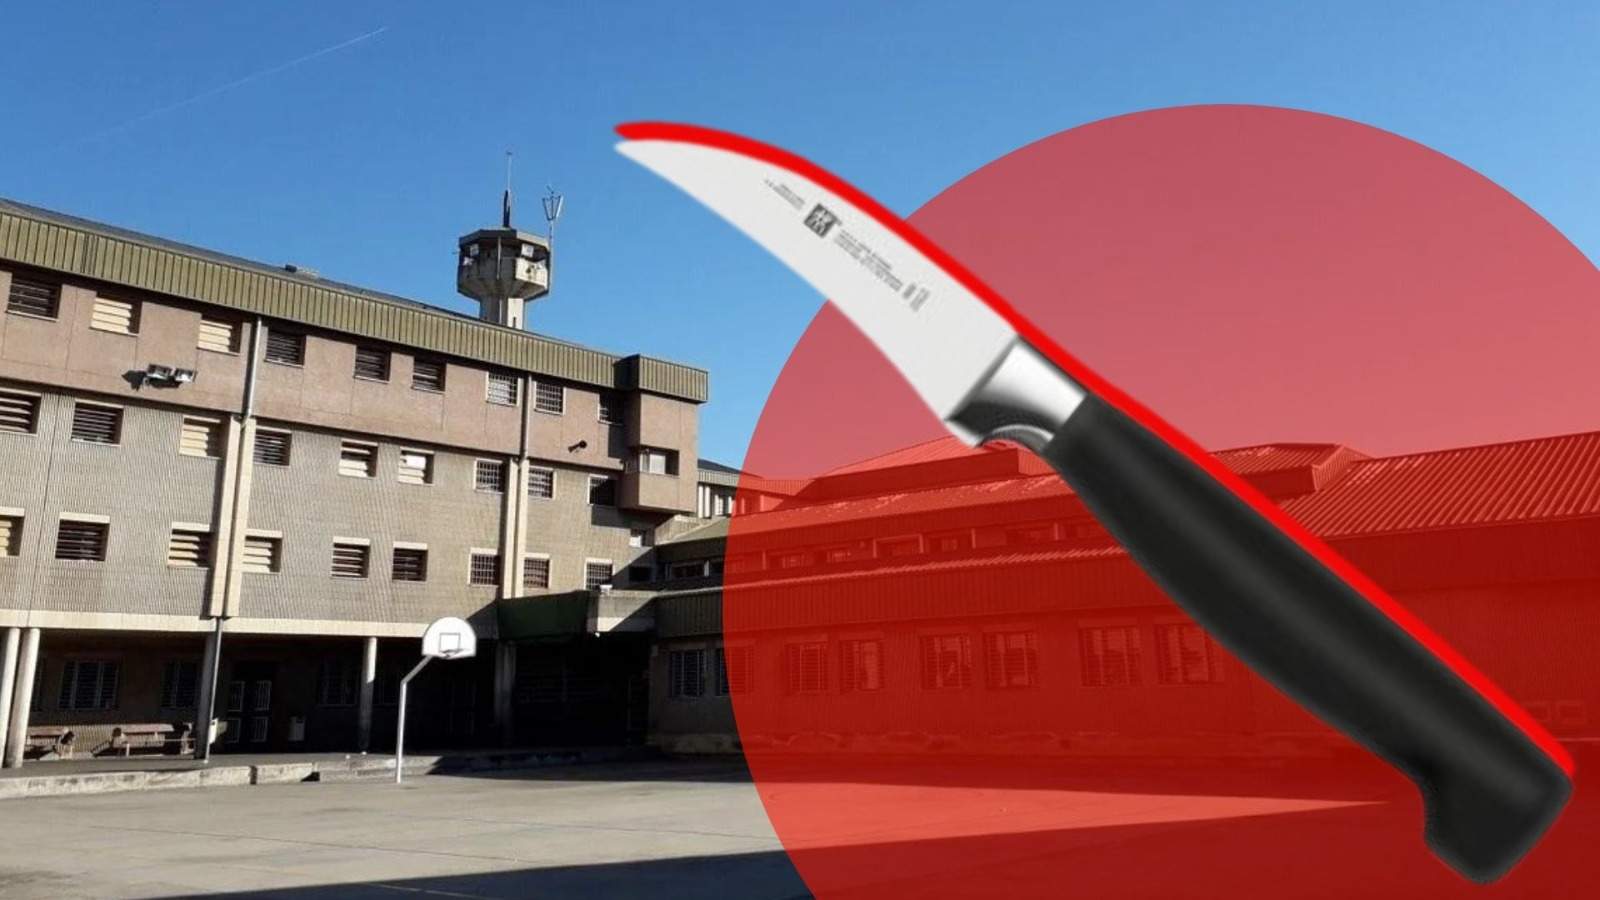 Alerta de seguretat a Quatre Camins: regiren la presó per trobar un ganivet "desaparegut" de la cuina